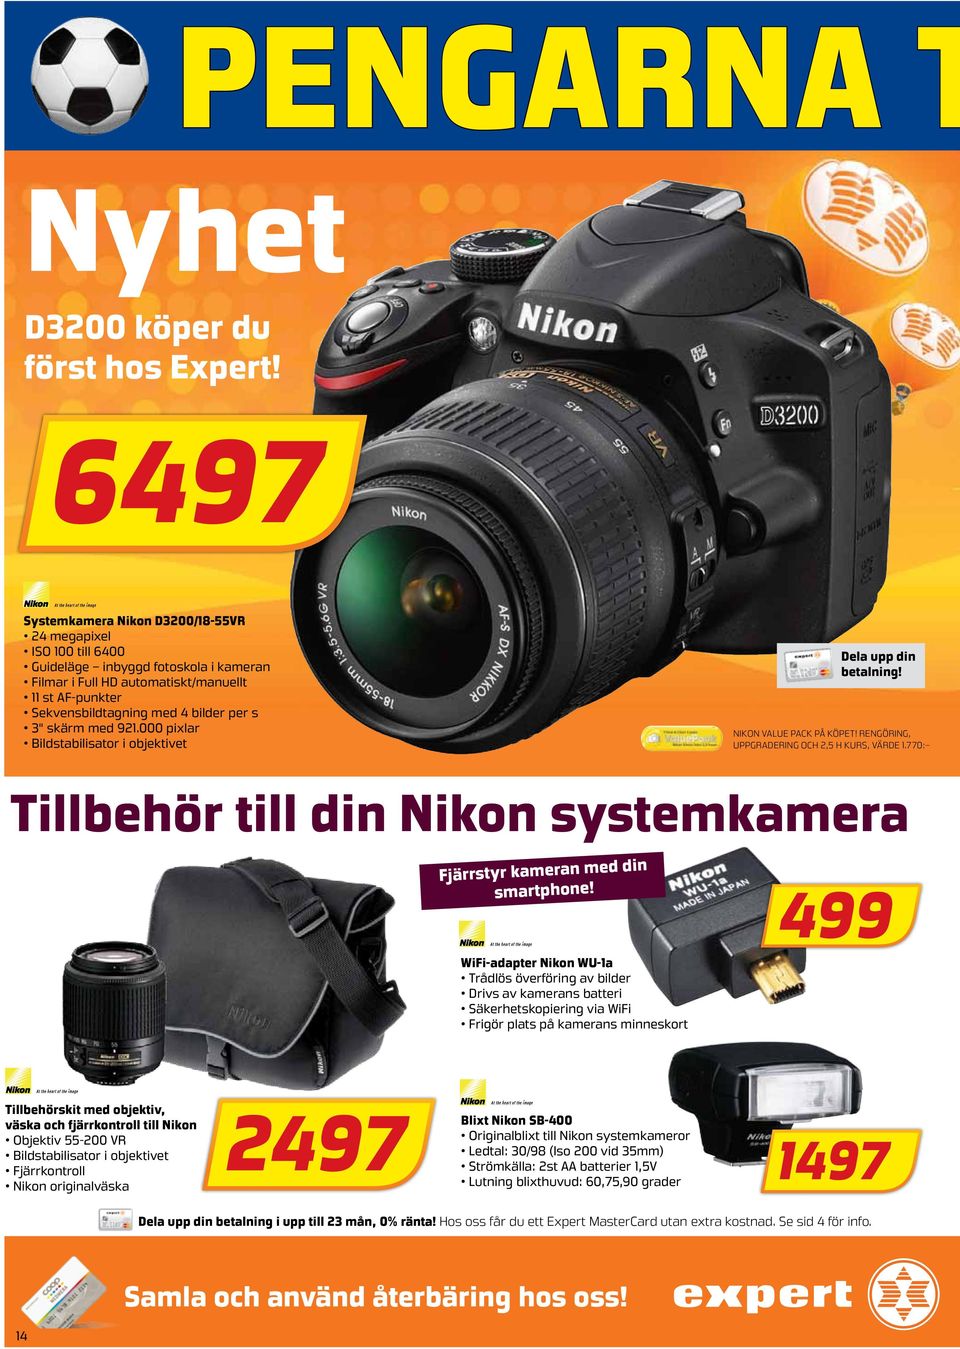 3" skärm med 921.000 pixlar Bildstabilisator i objektivet Dela upp din betalning! Nikon Value Pack på köpet! Rengöring, Uppgradering och 2,5 h kurs, värde 1.